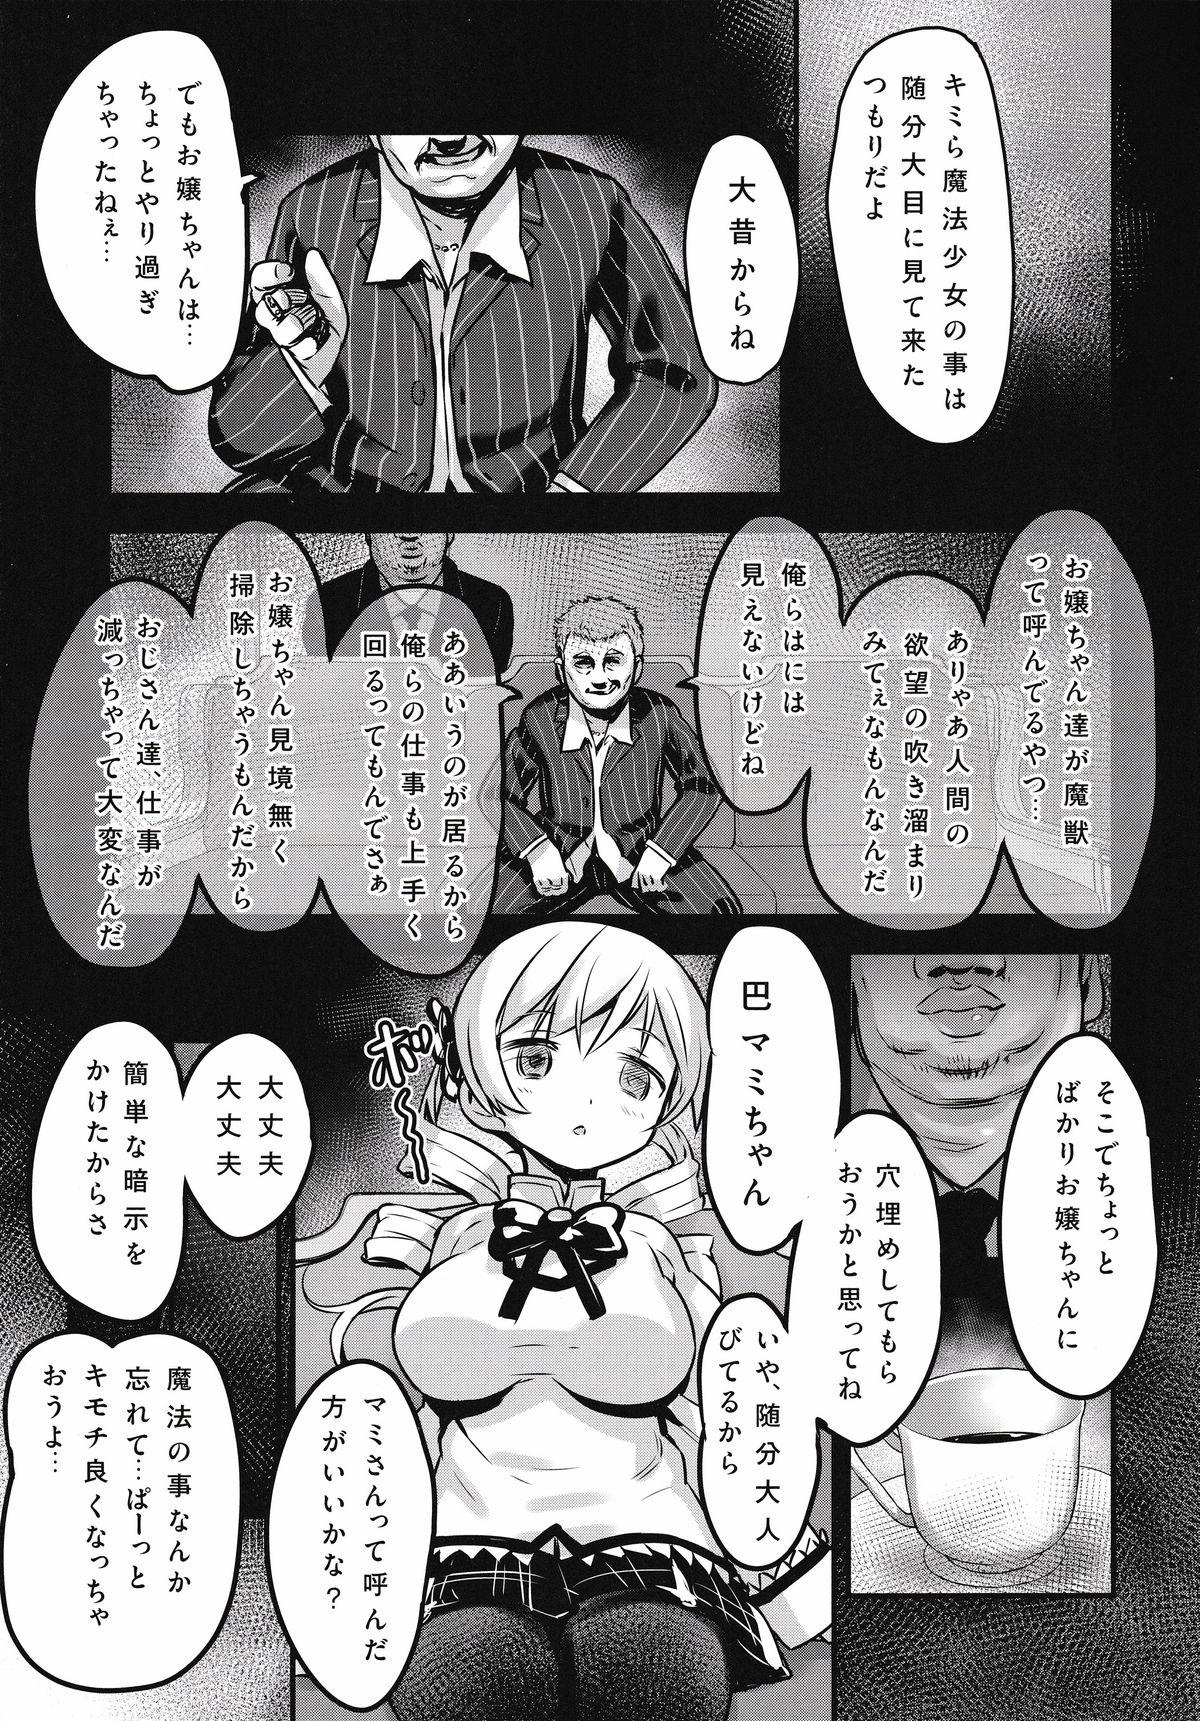 Exposed Shiritsu Mitakihara Chuugaku 3-nensei Tomoe Mami Hentai AV Debut - Puella magi madoka magica Gorgeous - Page 4